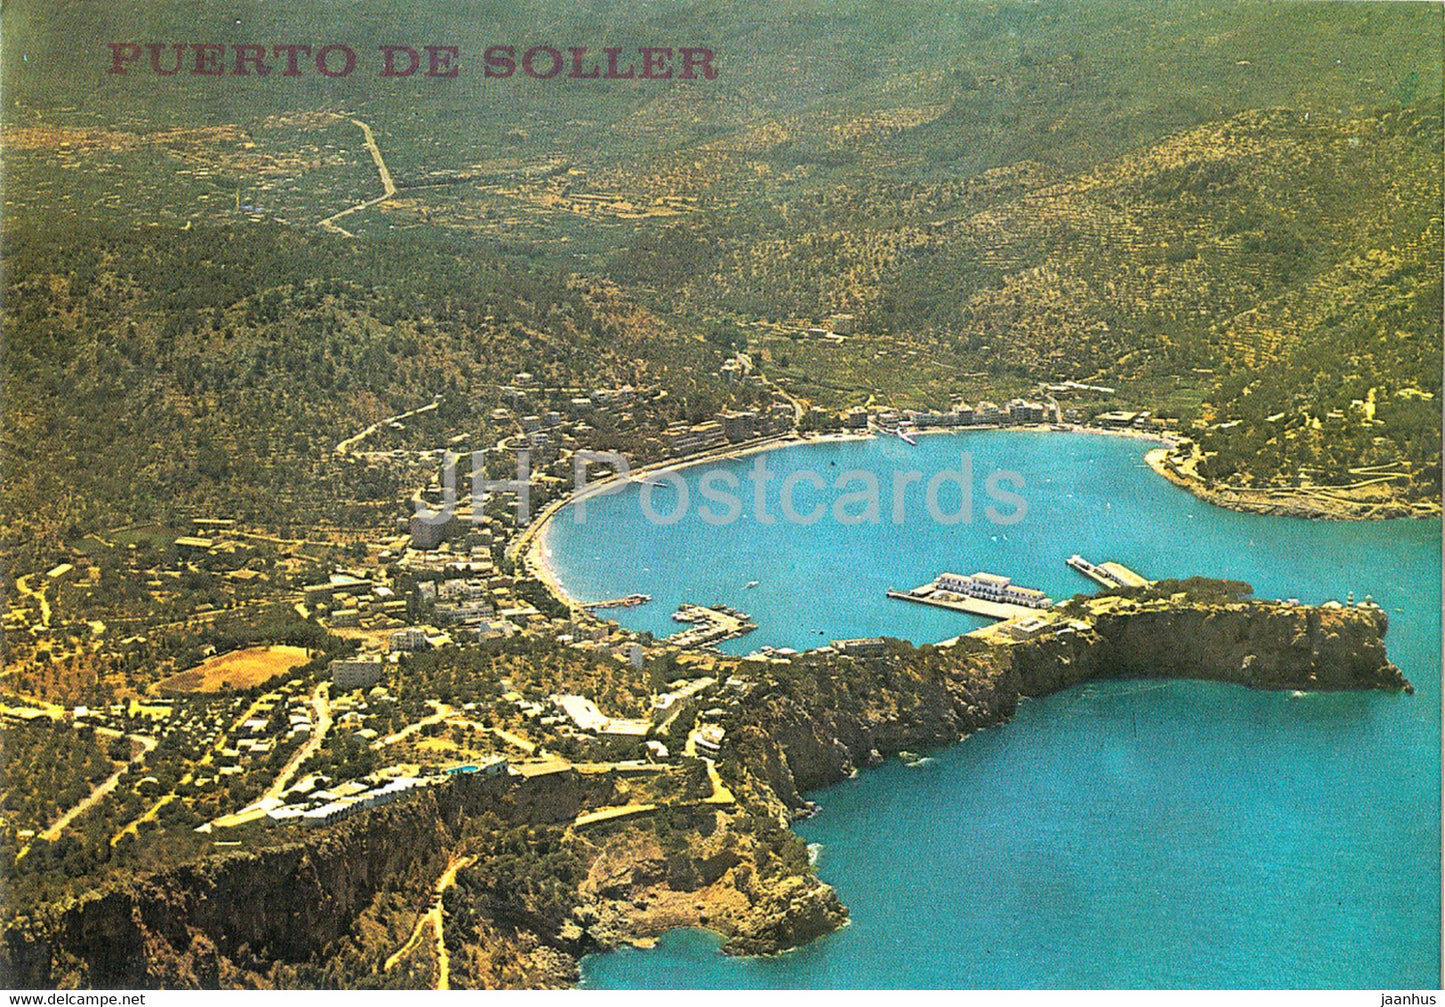 Puerto de Soller - Vista aerea - aerial view - 311 - Spain - unused - JH Postcards